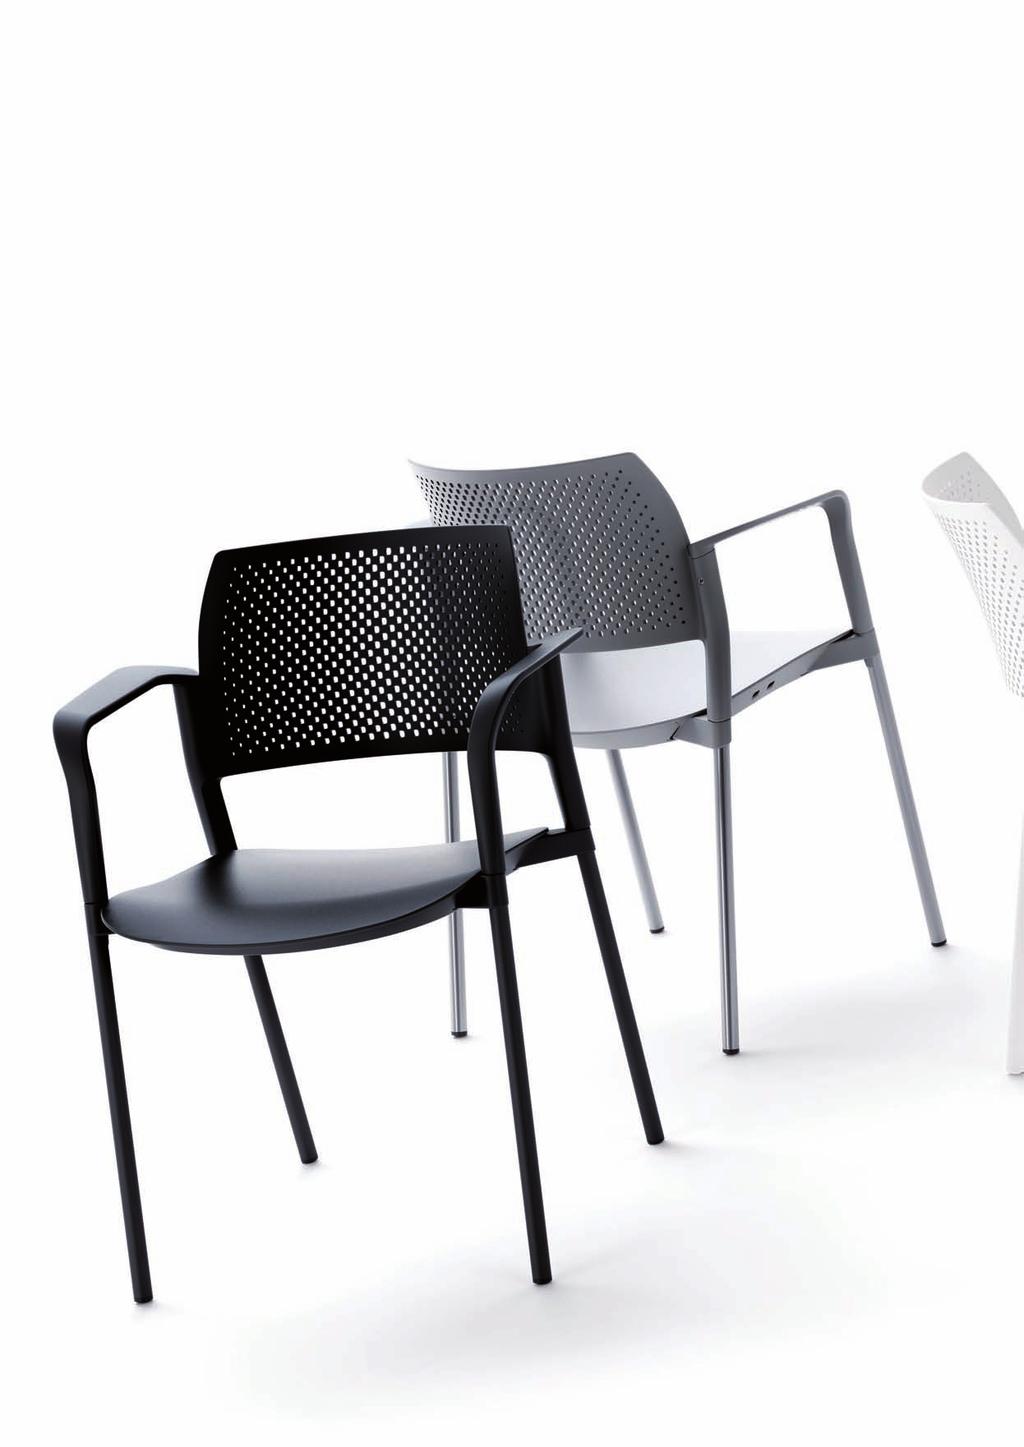 KYOS 02 KYOS A la fois fraîche et élégante, la gamme KYOS propose une série très contemporaine de sièges empilables pour visiteurs, réunion et collectivité.